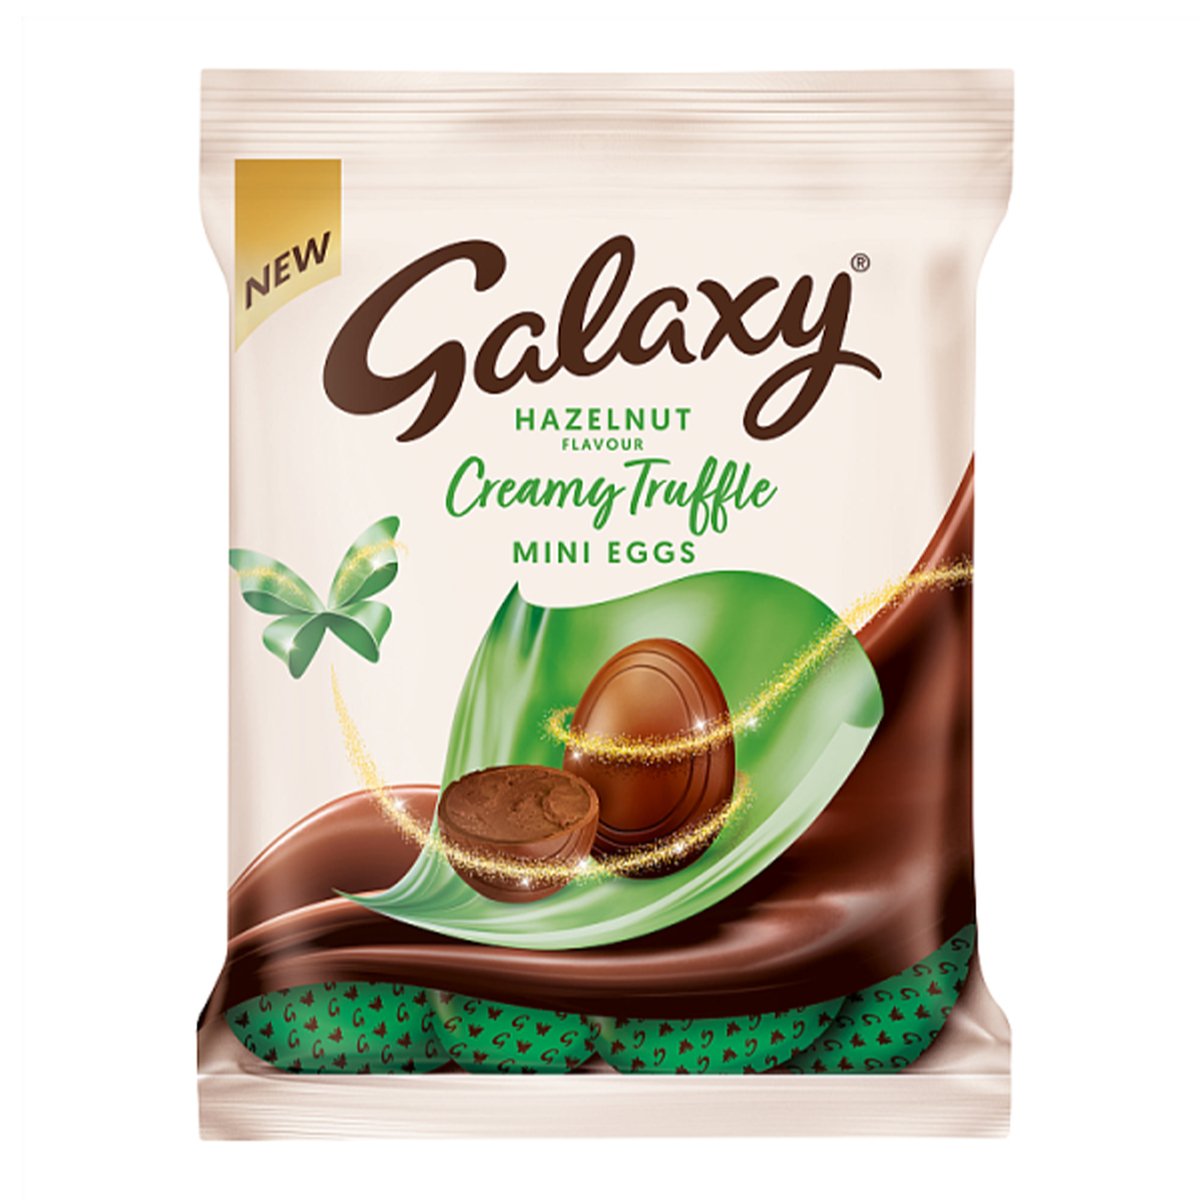 Buy Galaxy Creamy Truffle Hazelnut Mini Eggs 74 g Online at Best Price | Covrd Choco.Bars&Tab | Lulu UAE in UAE